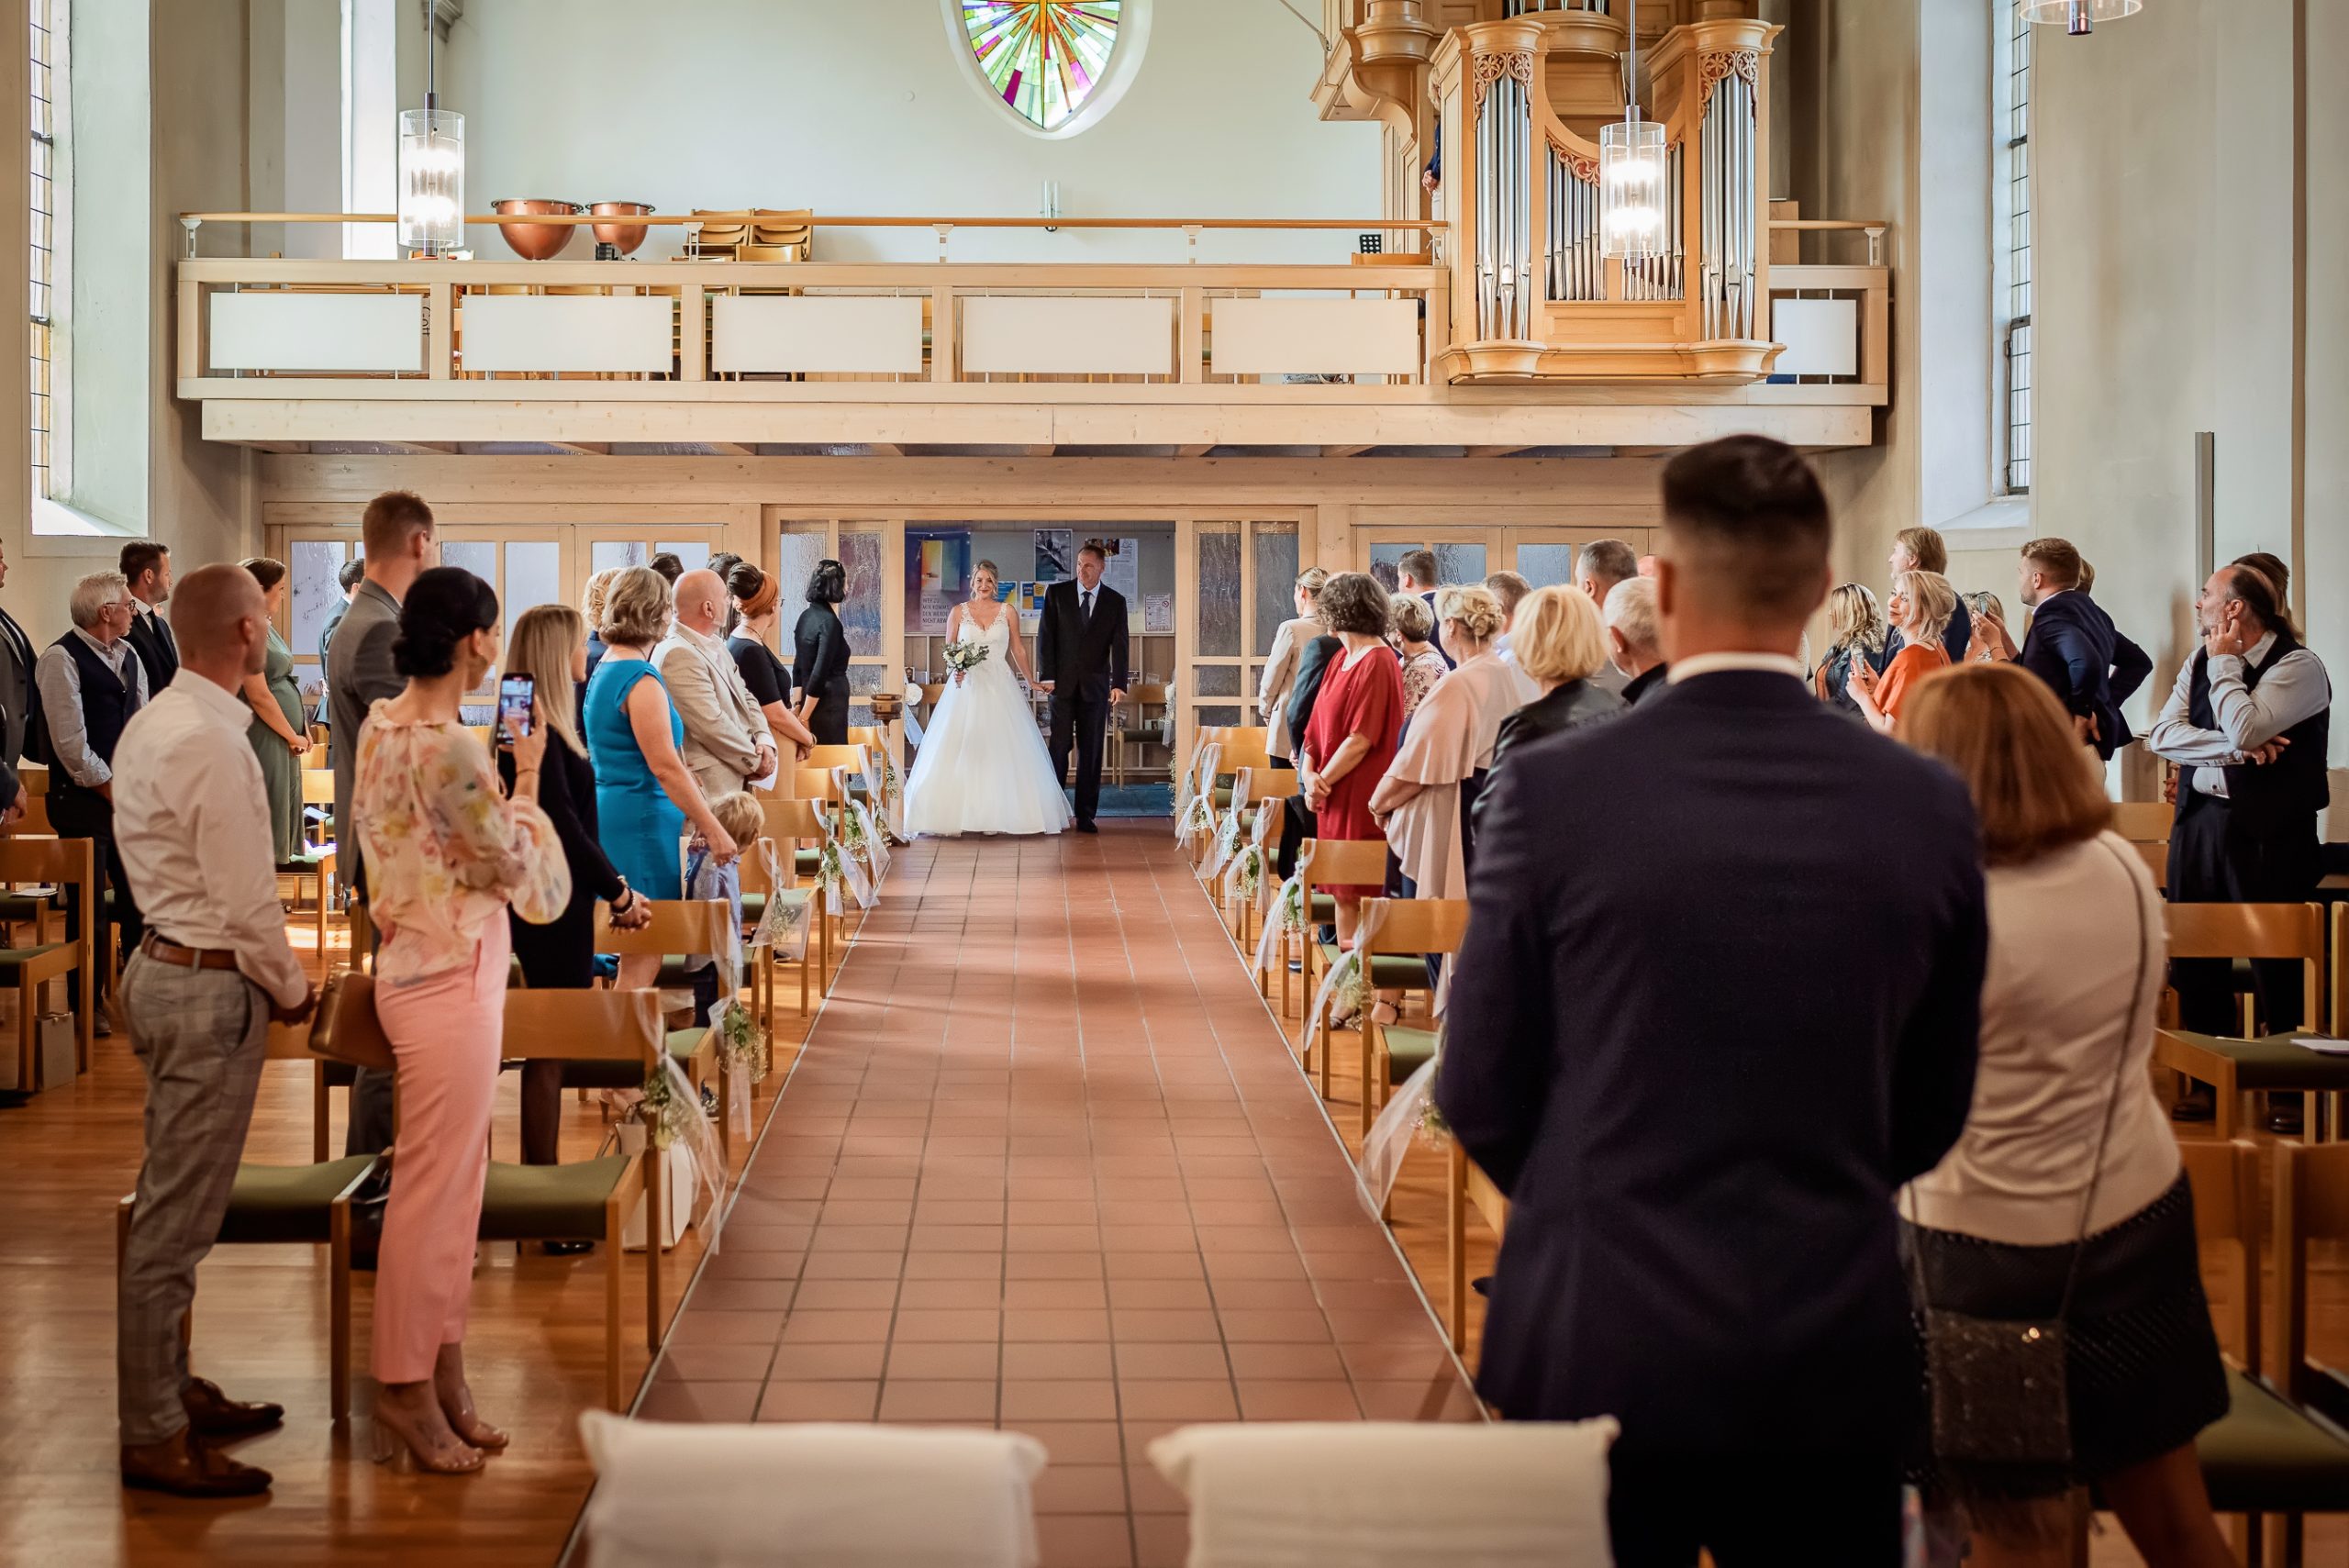 Ein Foto, das den Einzug der Braut in die Evangelische Kirche in Friesenheim während einer kirchlichen Hochzeit zeigt. Die Braut wird von ihrem Vater zum Altar geführt, während die Gäste ihre Blicke auf sie richten.